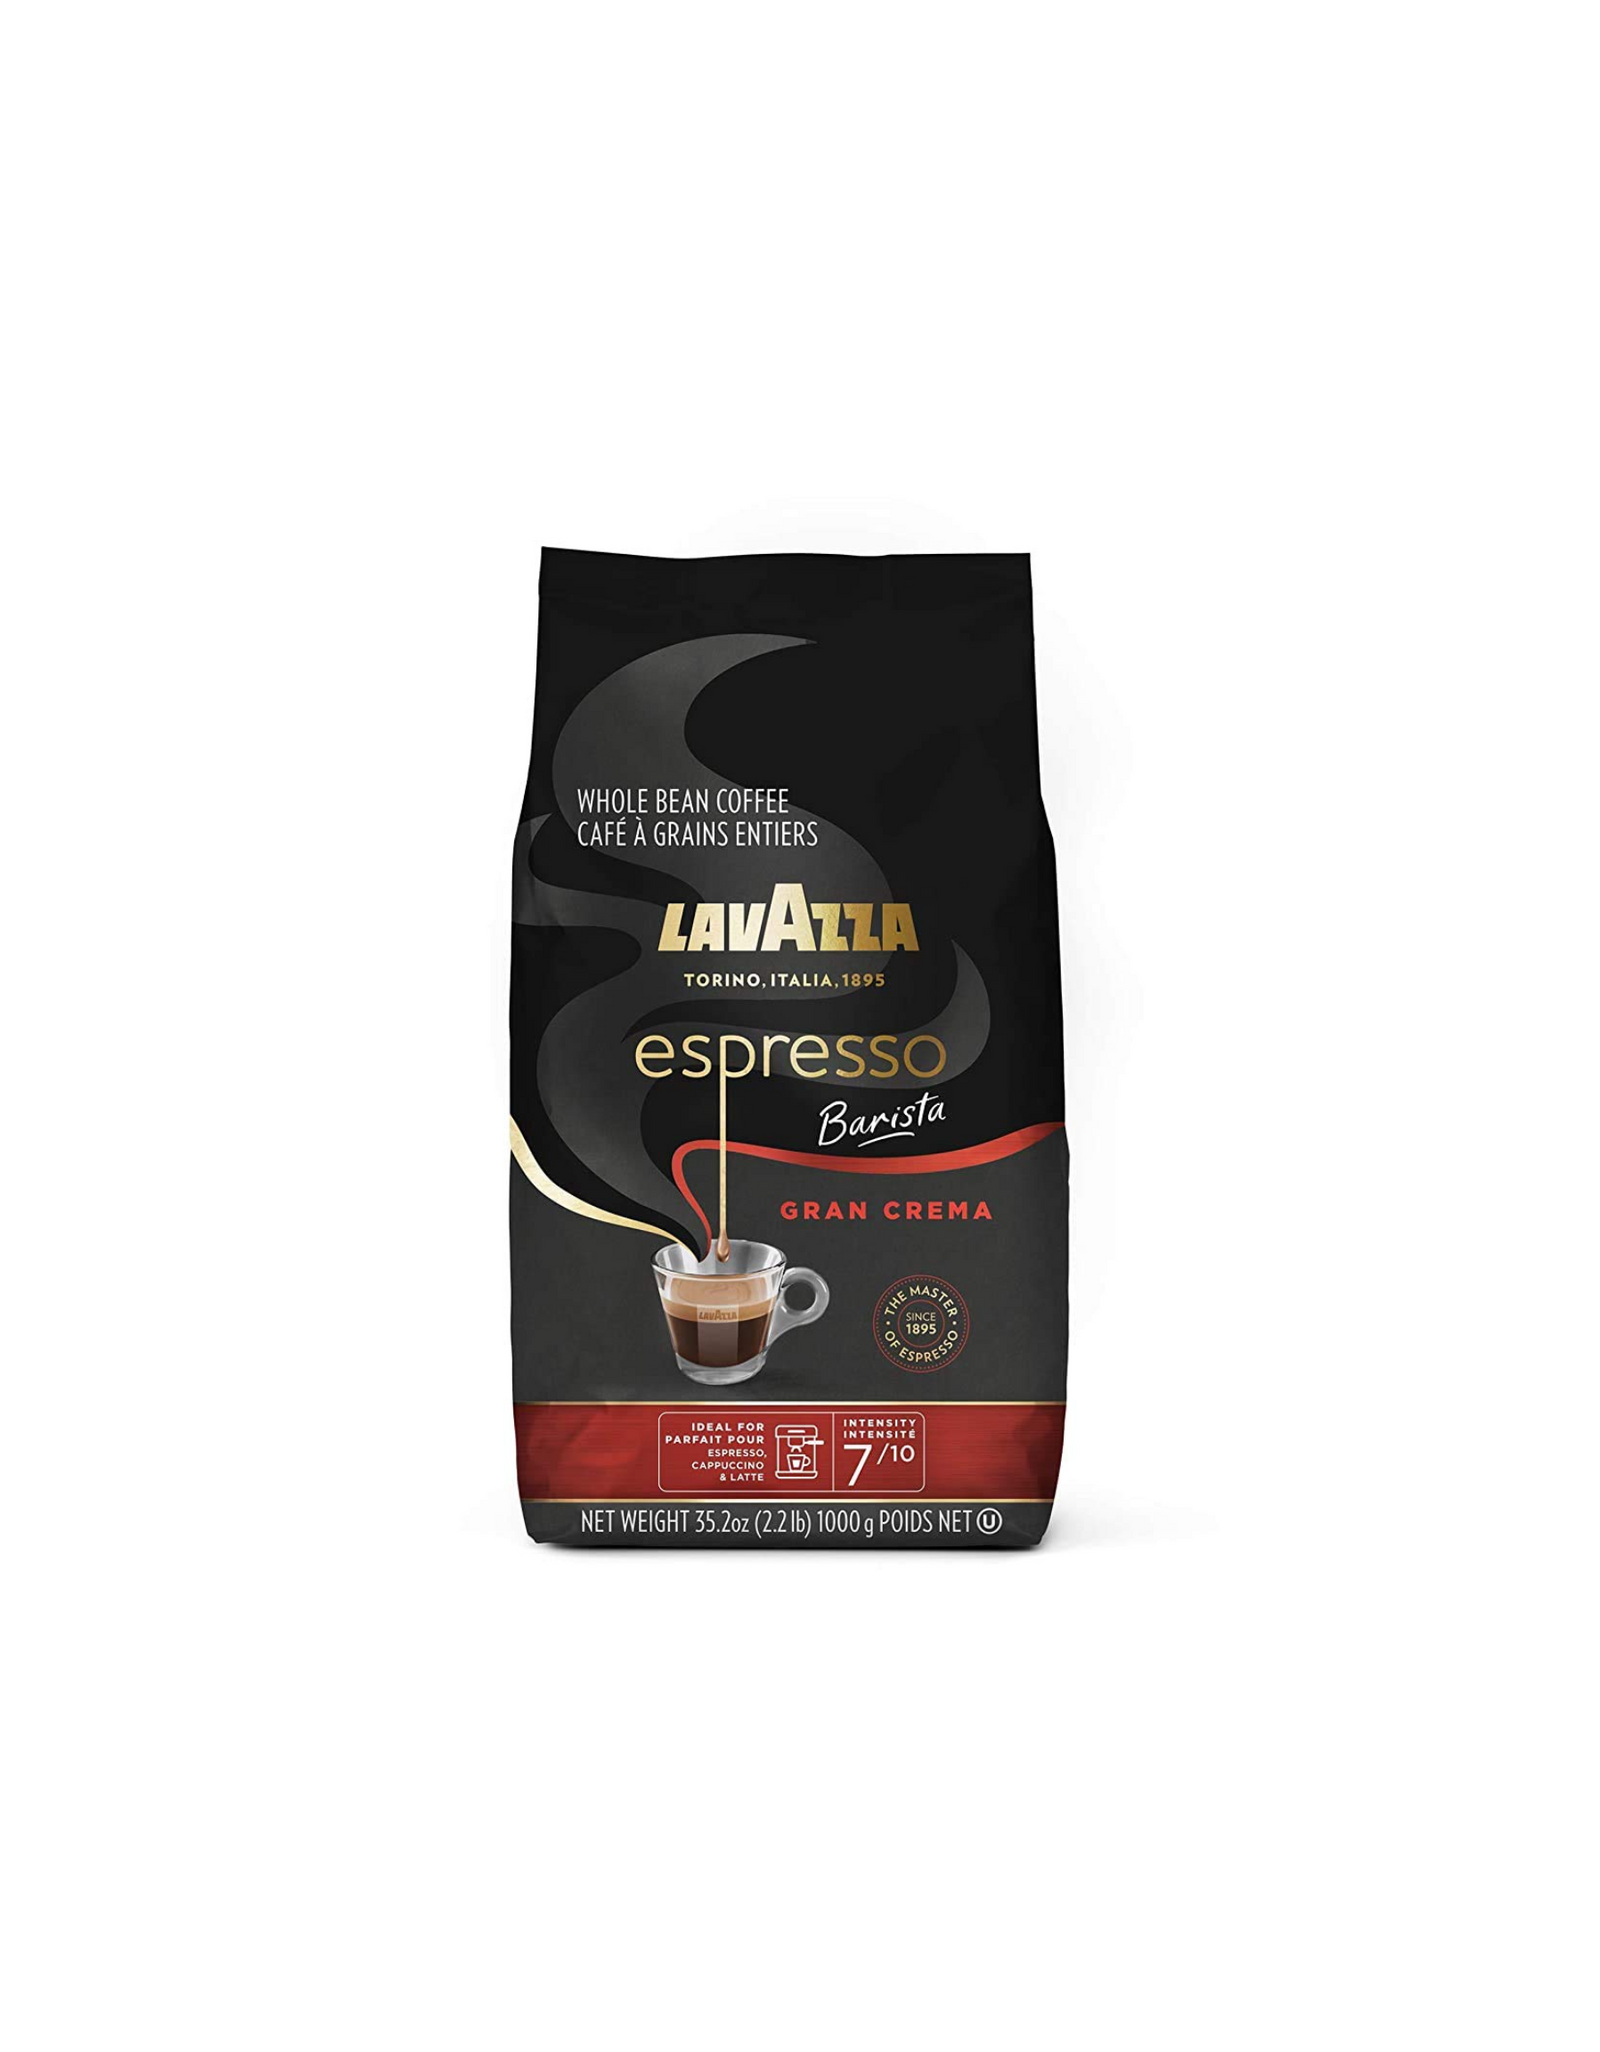 Lavazza Espresso Barista Gran Crema Whole Bean Coffee Blend, Medium Espresso Roast, 35.2 oz (2.2 lb.)